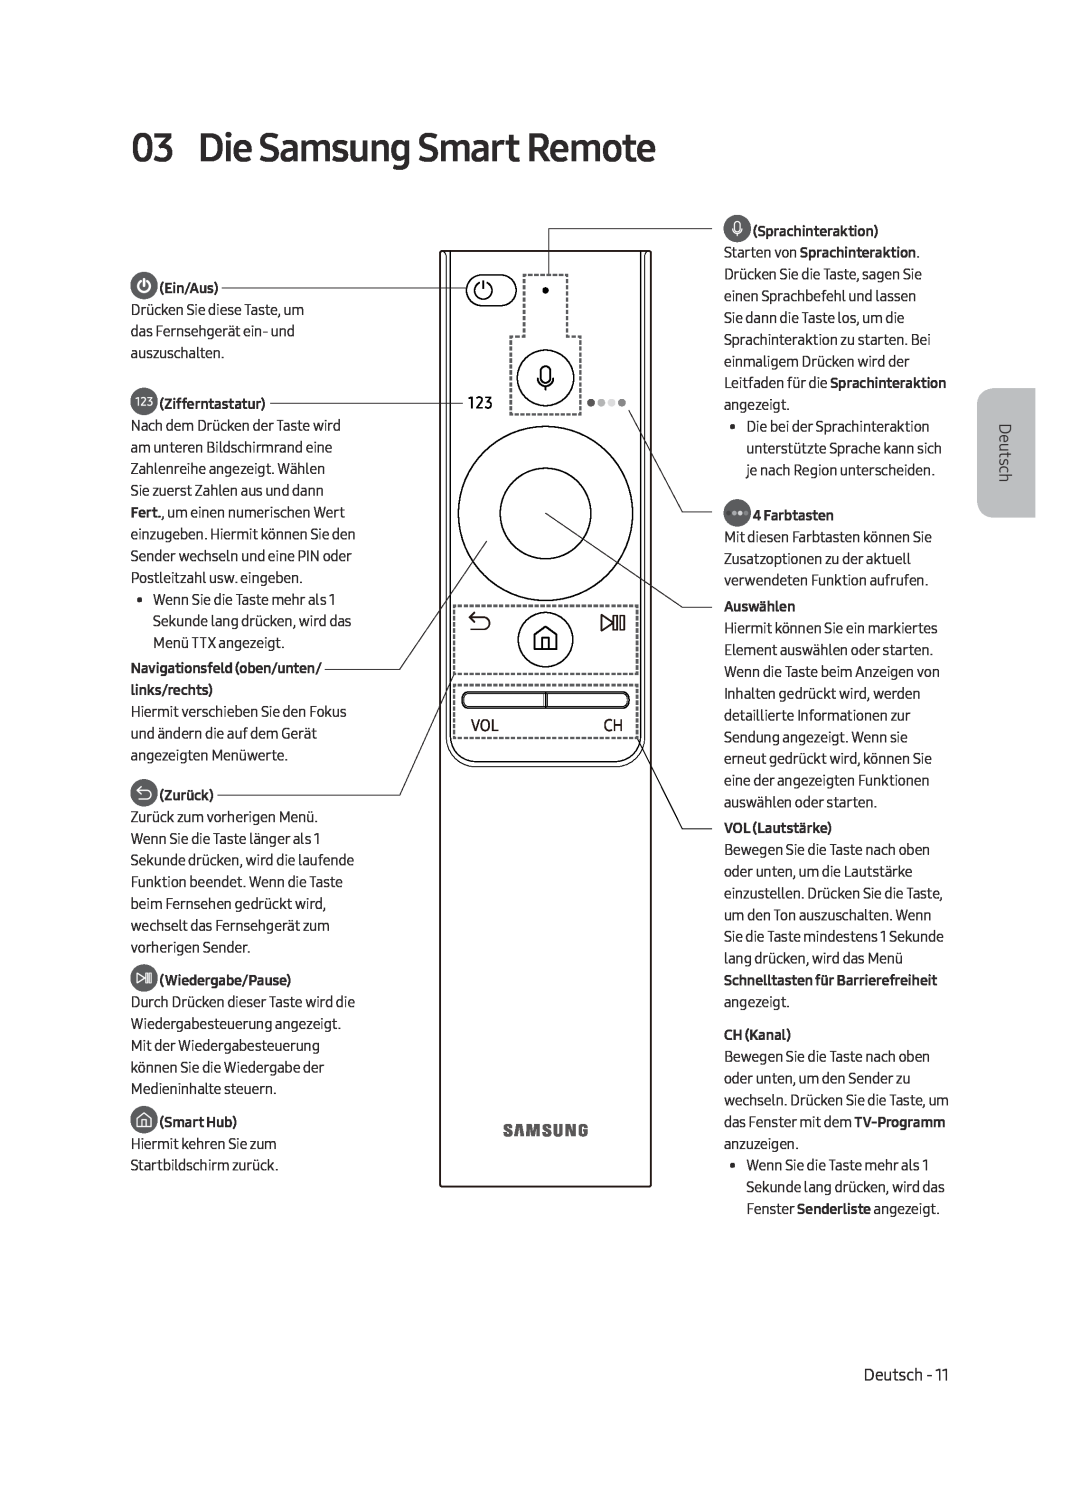 Samsung UE65MU7050LXXN manual Die Samsung Smart Remote, Ein/Aus, Zifferntastatur, Navigationsfeld oben/unten/ links/rechts 